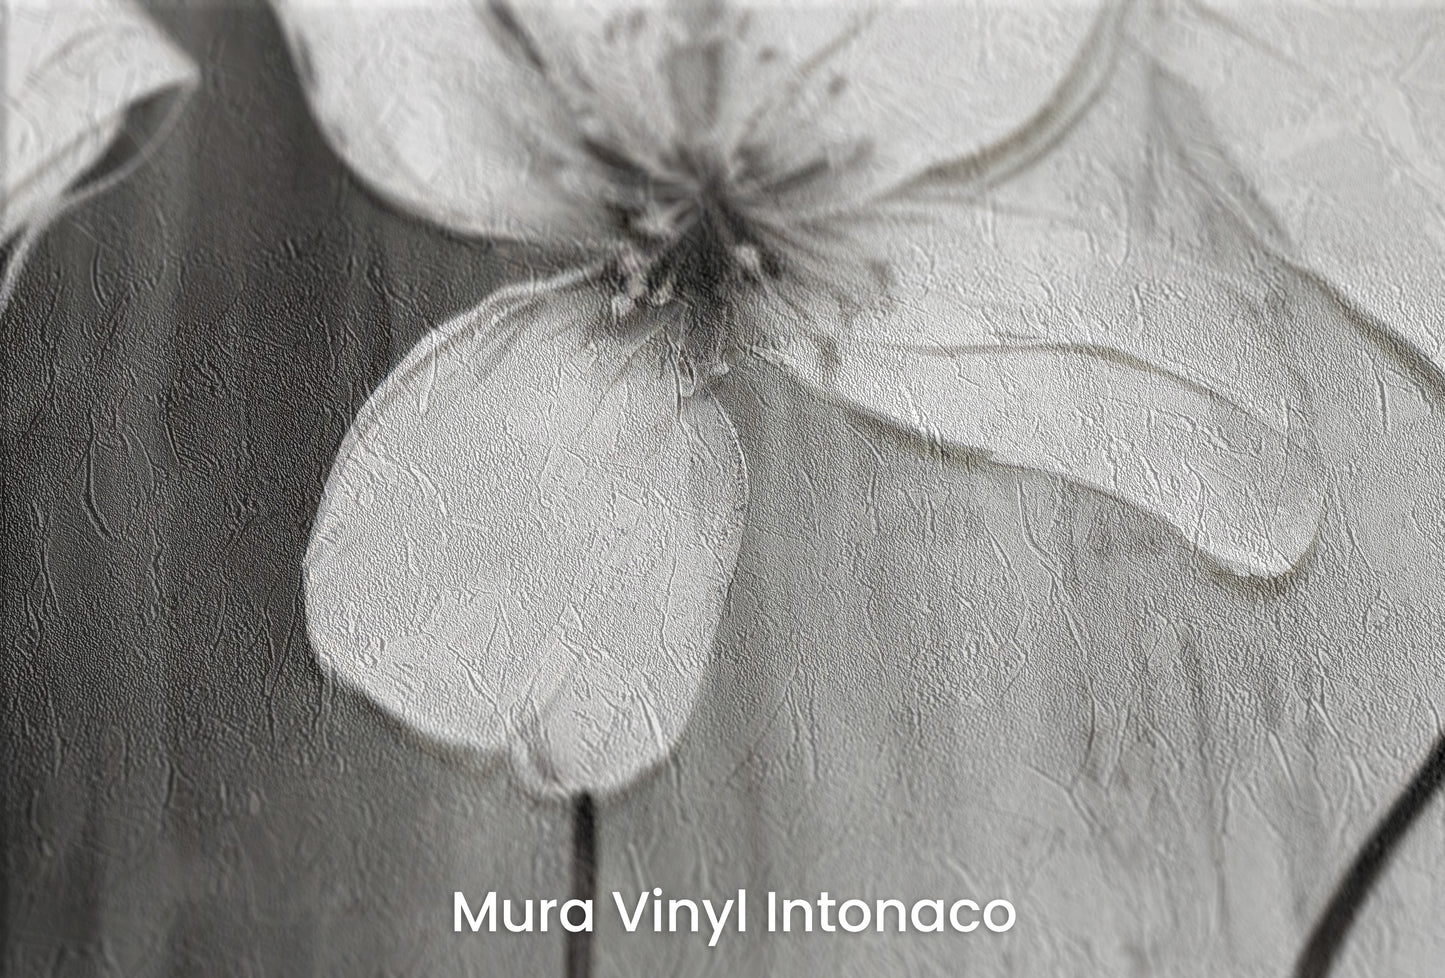 Zbliżenie na artystyczną fototapetę o nazwie CHIAROSCURO BLOSSOMS na podłożu Mura Vinyl Intonaco - struktura tartego tynku.